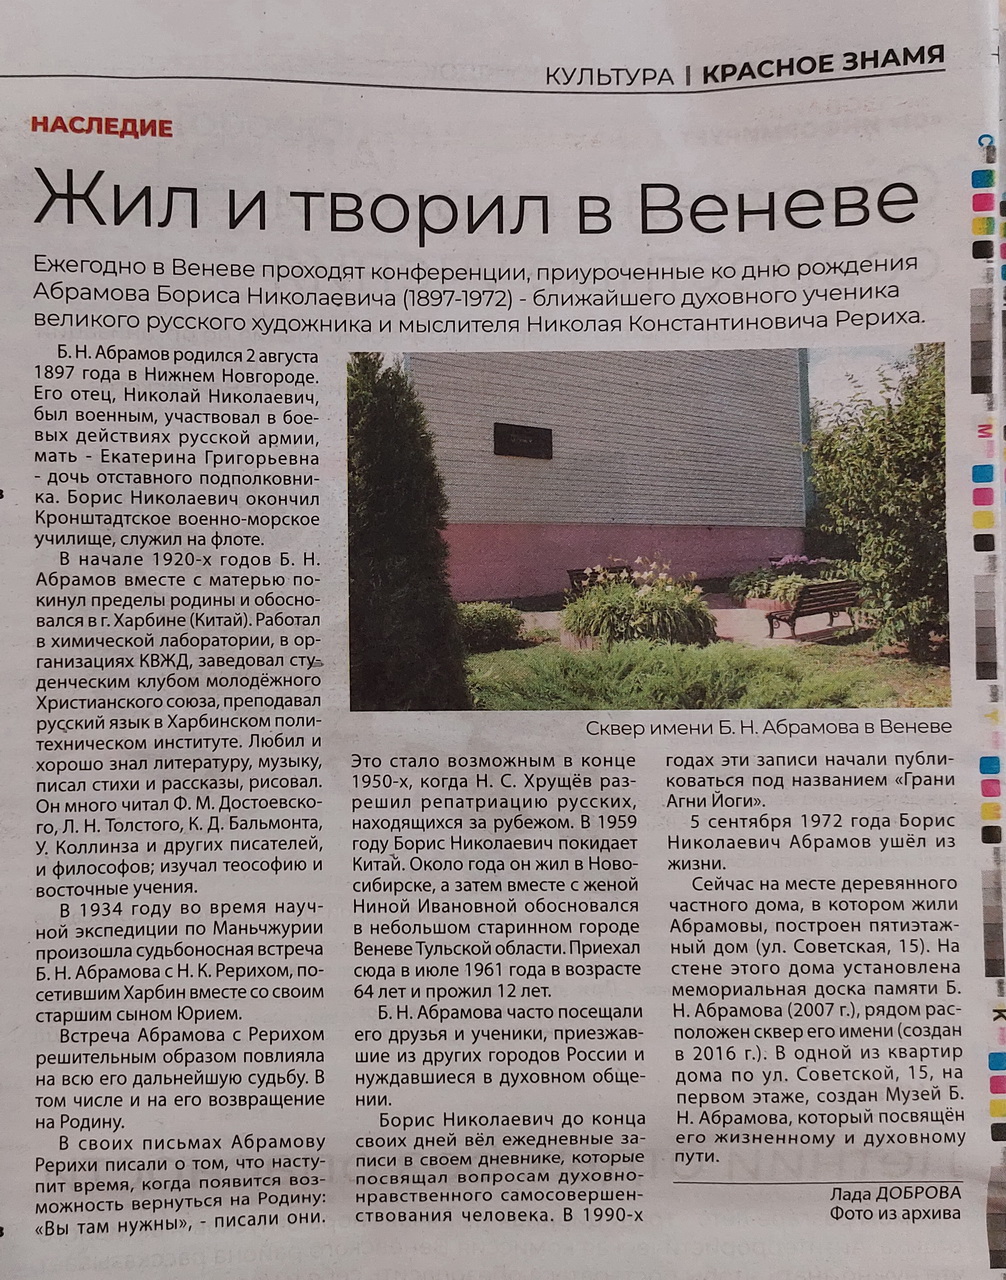 Статья о Б.Н. Абрамове в венёвской газете.